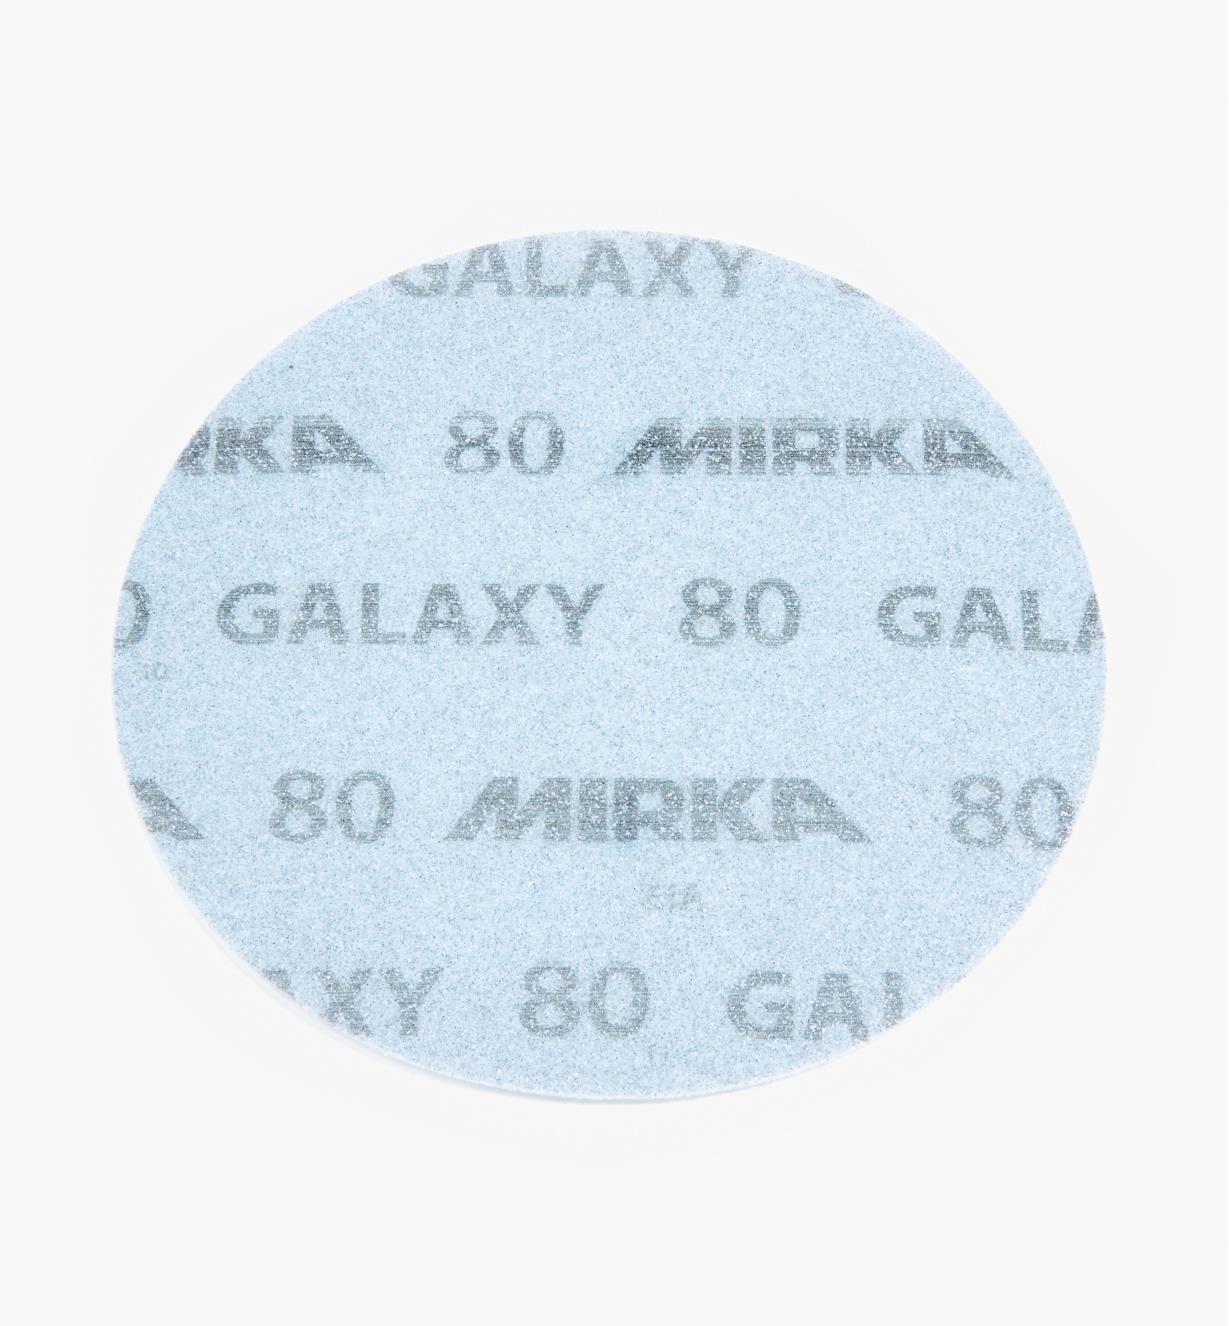 08K2103 - Disque abrasif autoagrippant Galaxy, 6 po, grain 80, l'unité